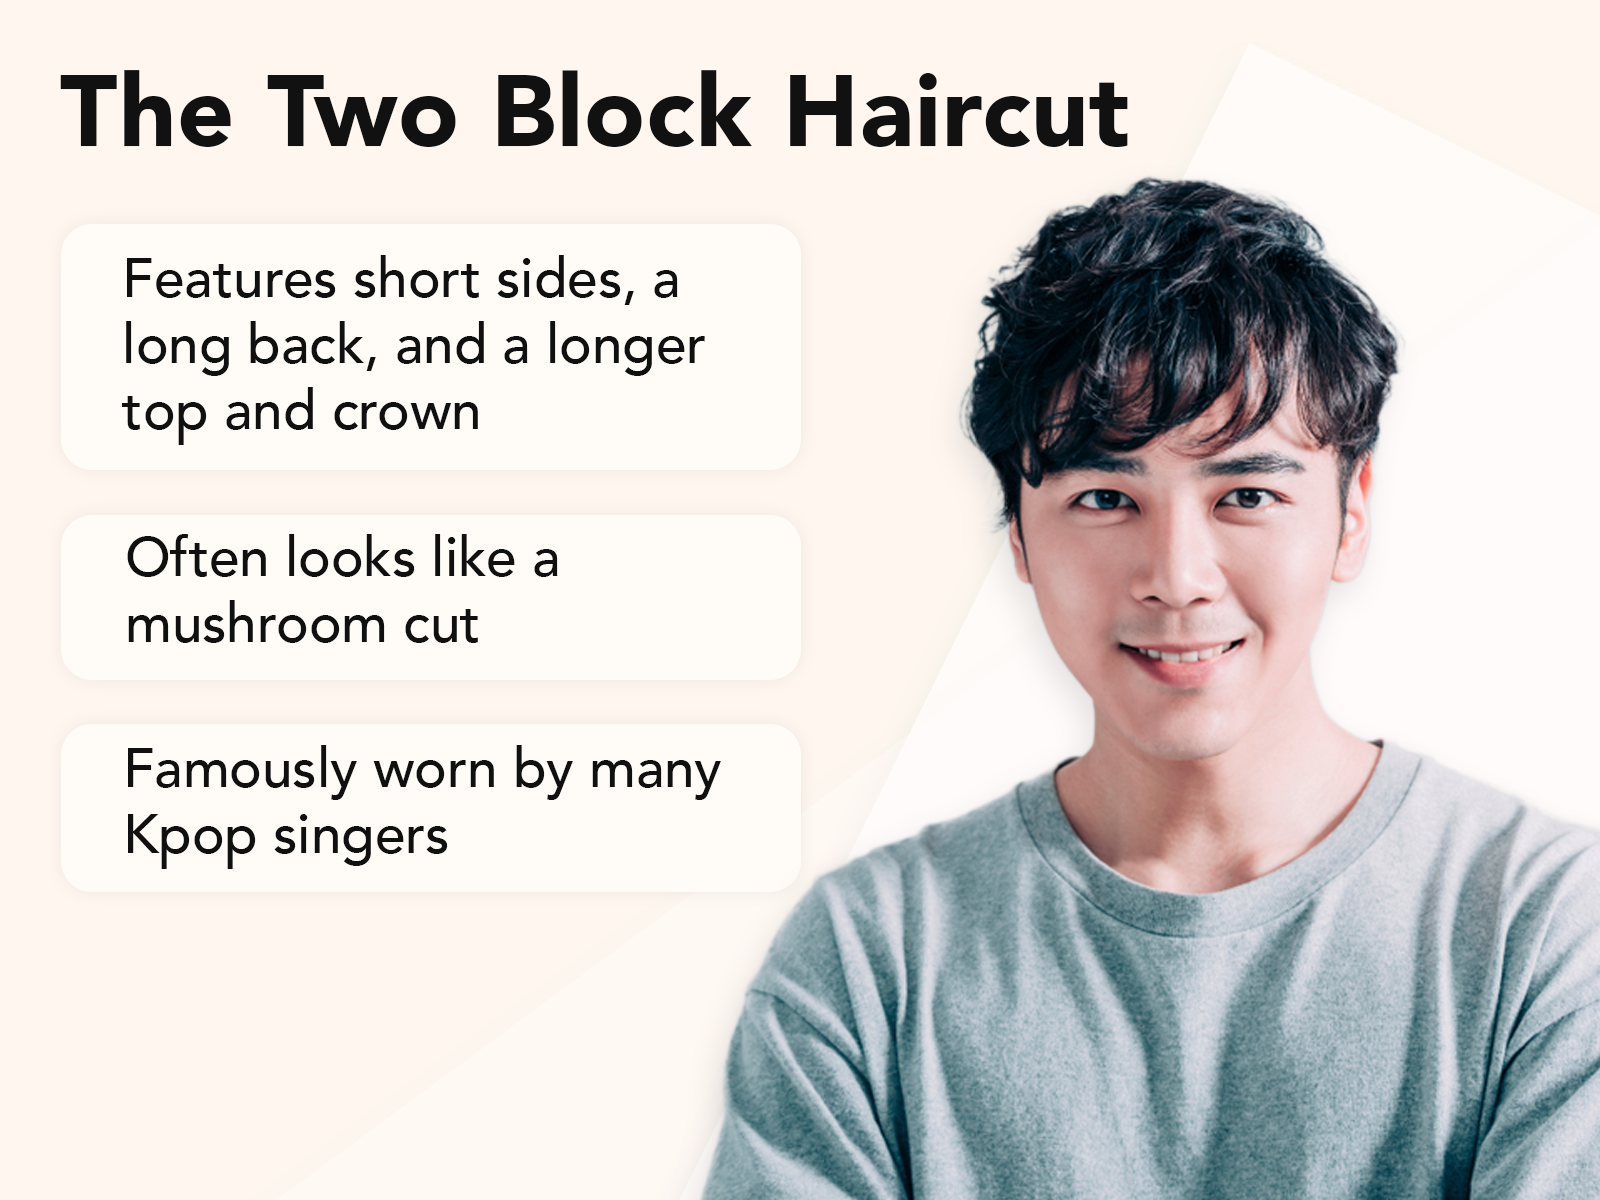 Two Block Haircut explainer image met een bruine achtergrond